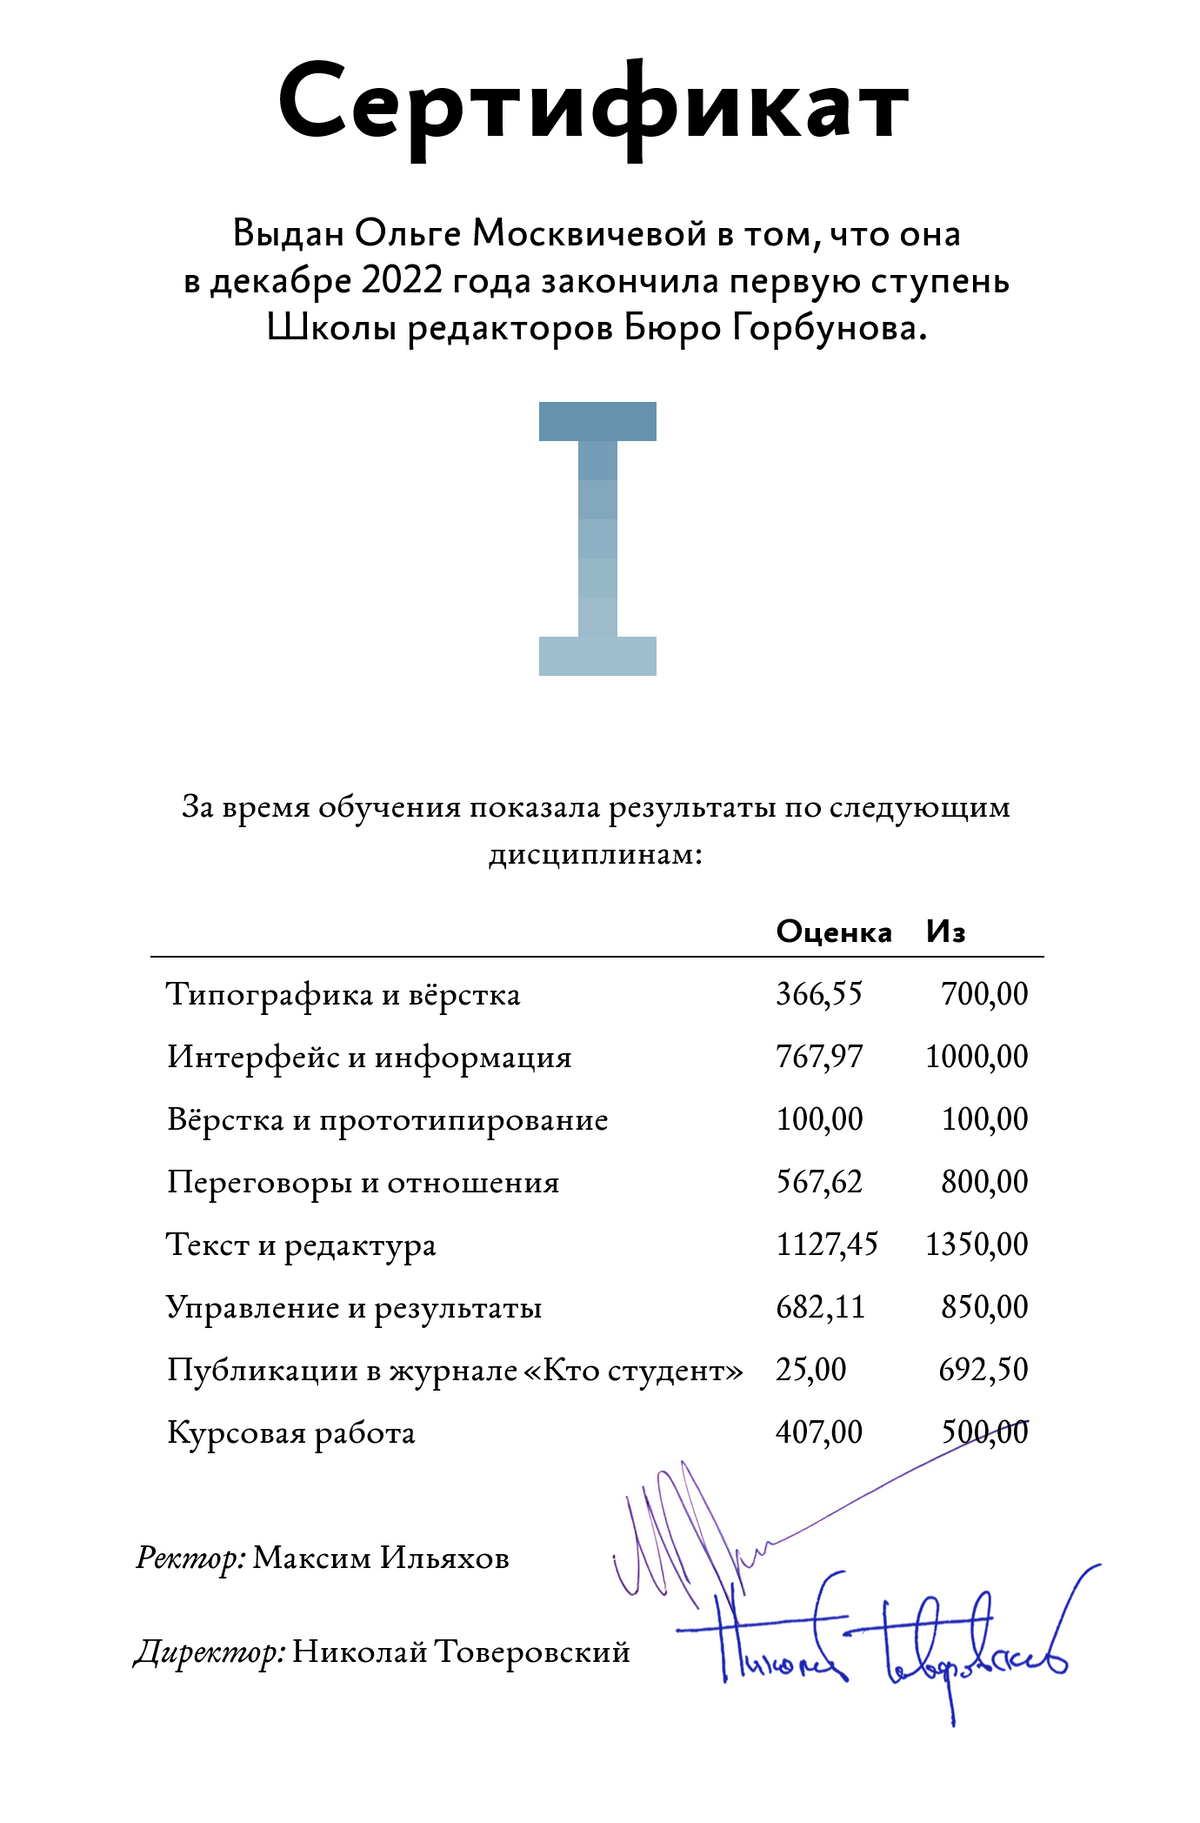 Мой сертификат об окончании обучения. Тесты по типографике давались мне особенно тяжело. Источник: bureau.ru